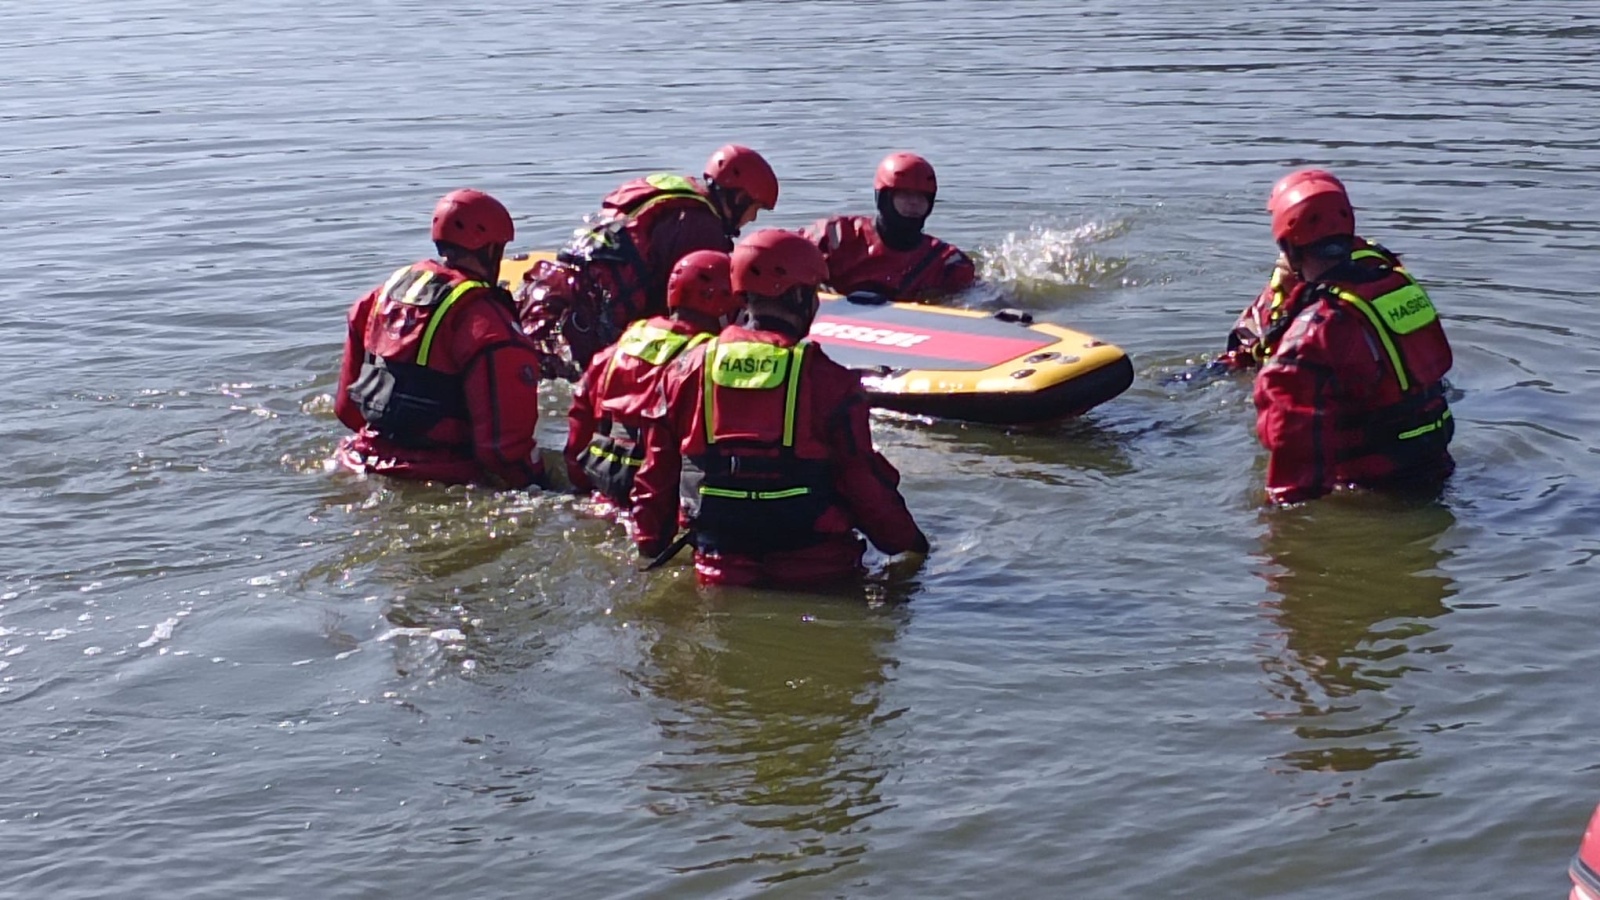 023-Výcvik hasičů na klidné vodní hladině rybníka Vyžlovka.jpeg